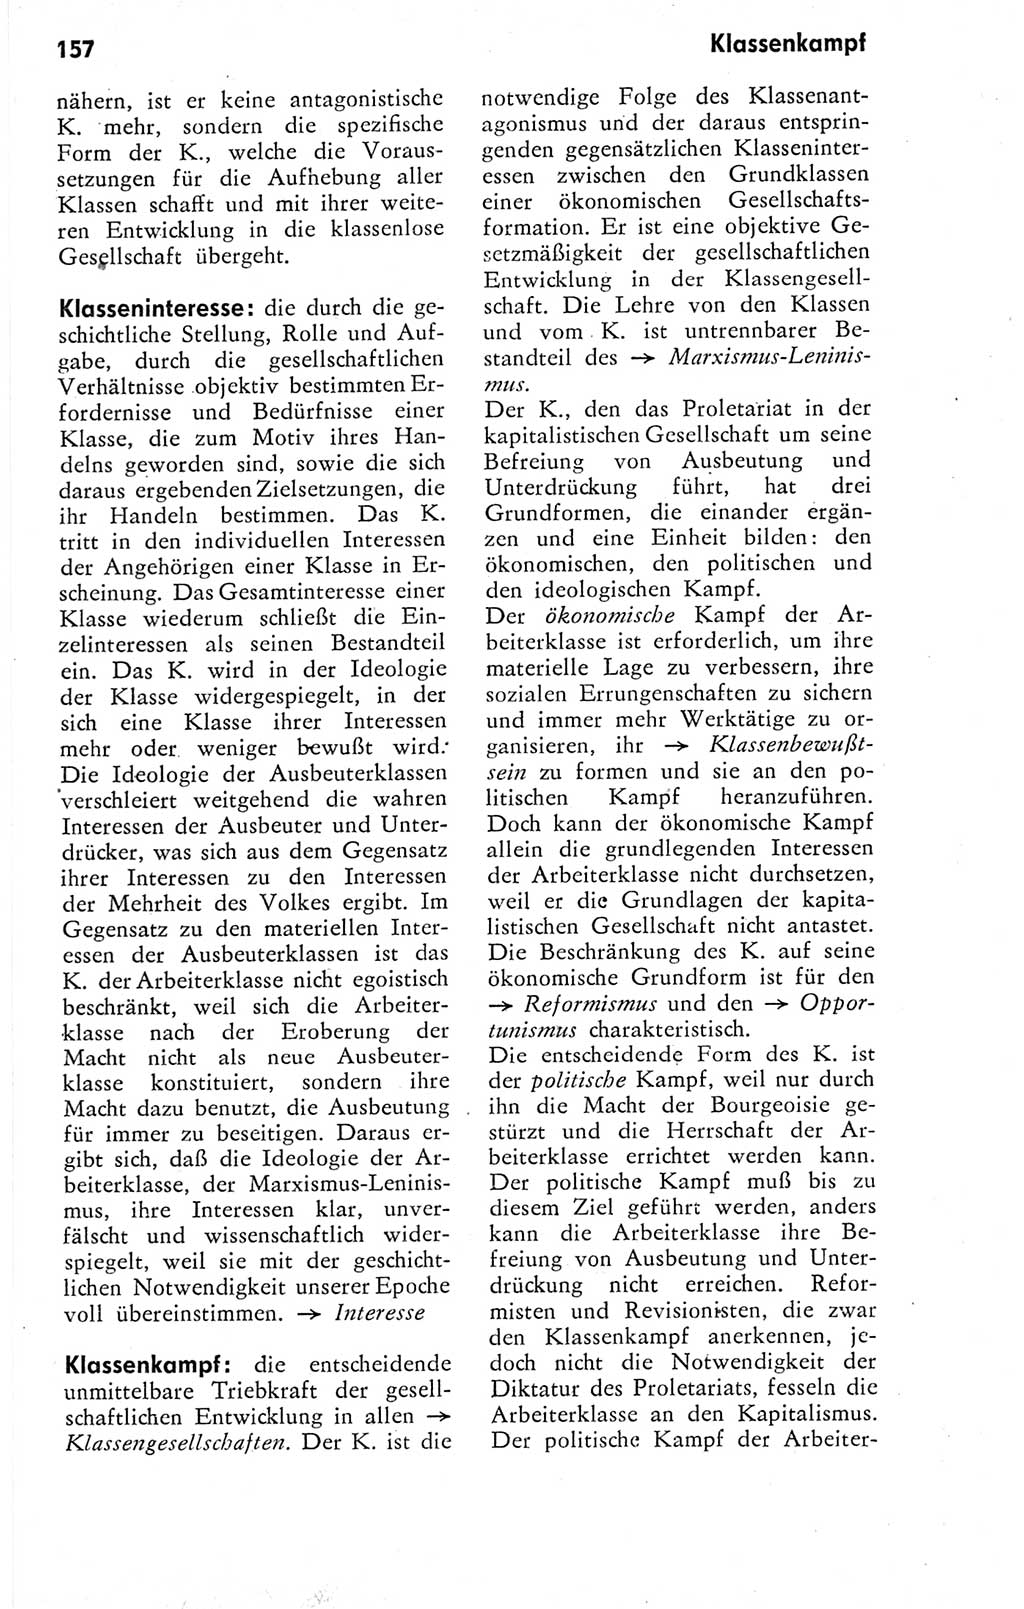 Kleines Wörterbuch der marxistisch-leninistischen Philosophie [Deutsche Demokratische Republik (DDR)] 1974, Seite 157 (Kl. Wb. ML Phil. DDR 1974, S. 157)